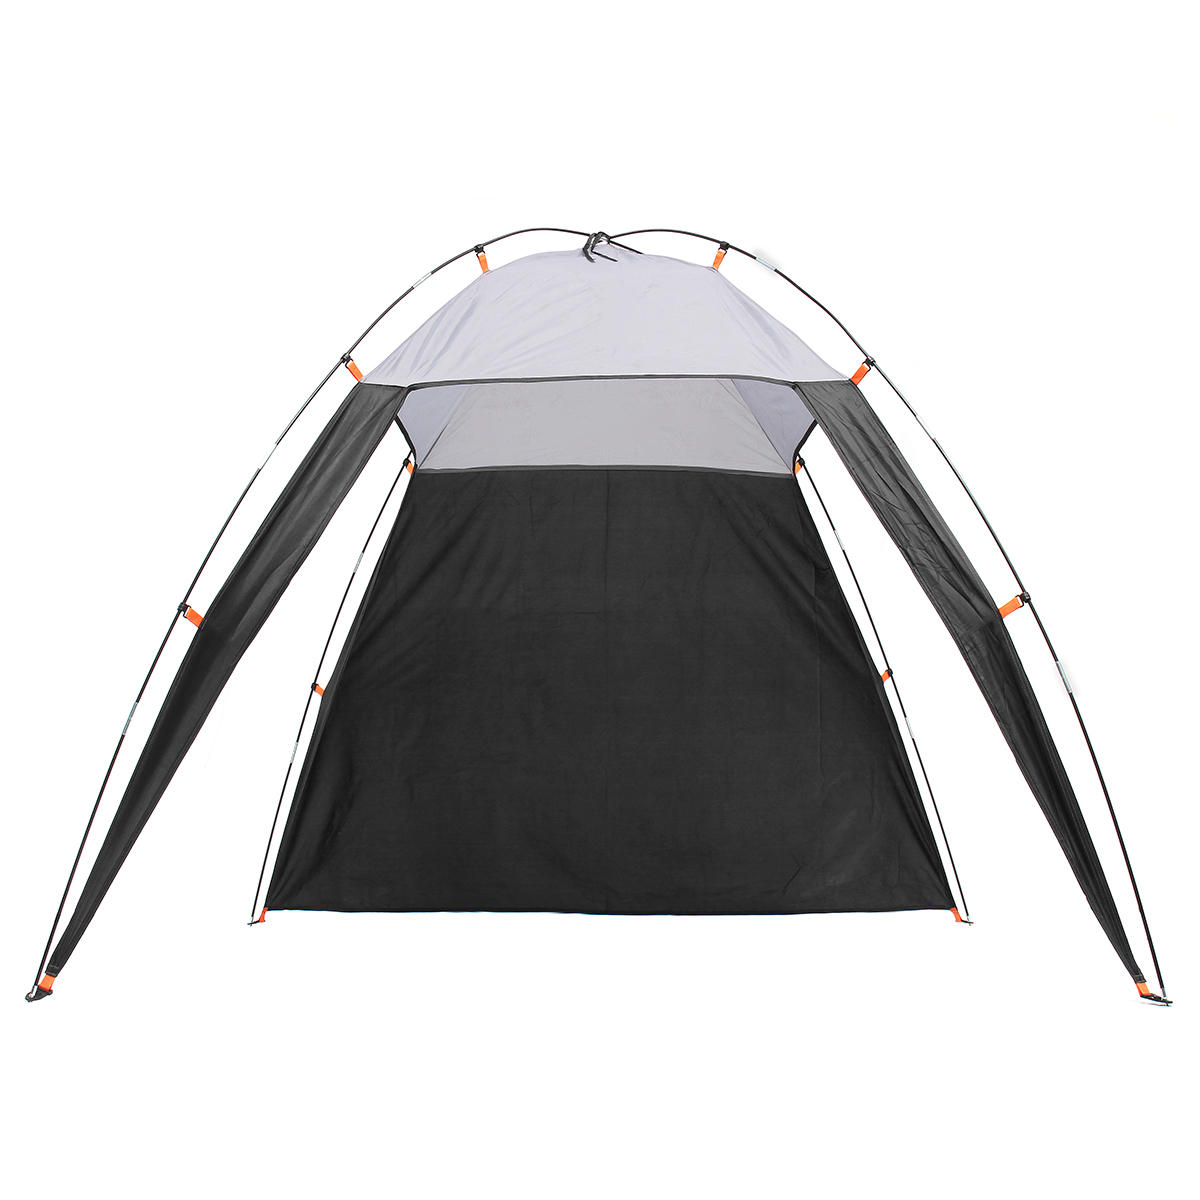 Driehoekige tent voor 5-8 personen, waterdicht en zonwerend, ideaal voor kamperen en wandelen op het strand in de buitenlucht.